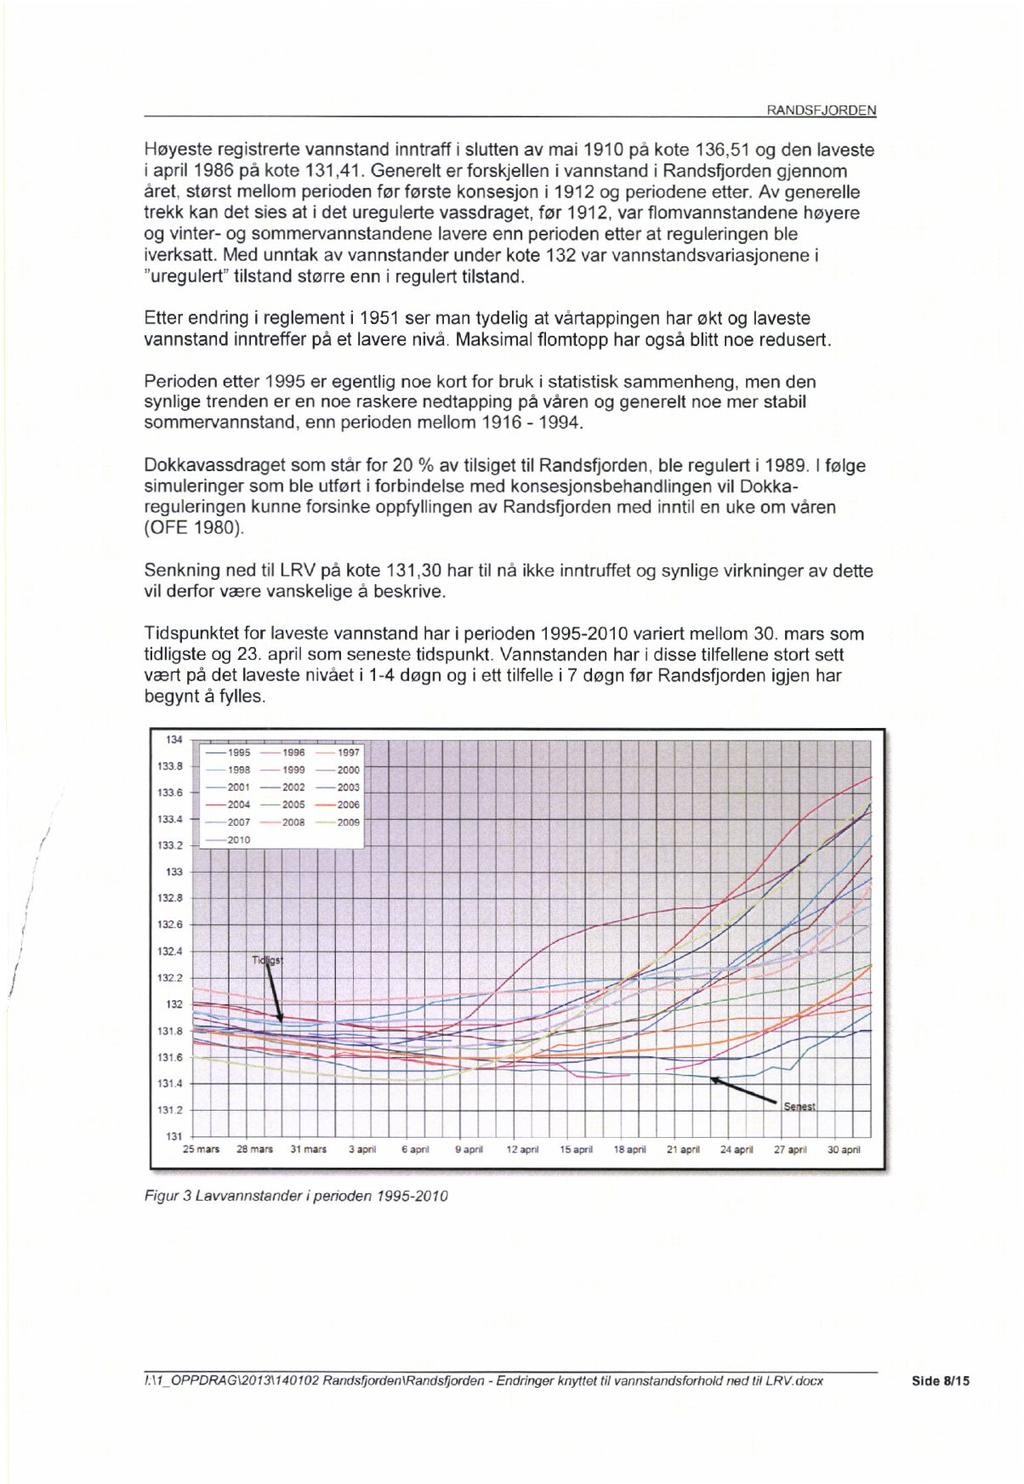 Høyeste registrerte vannstand inntraff i slutten av mai 1910 pa kote 136,51 og den laveste i april 1986 på kote 131,41.